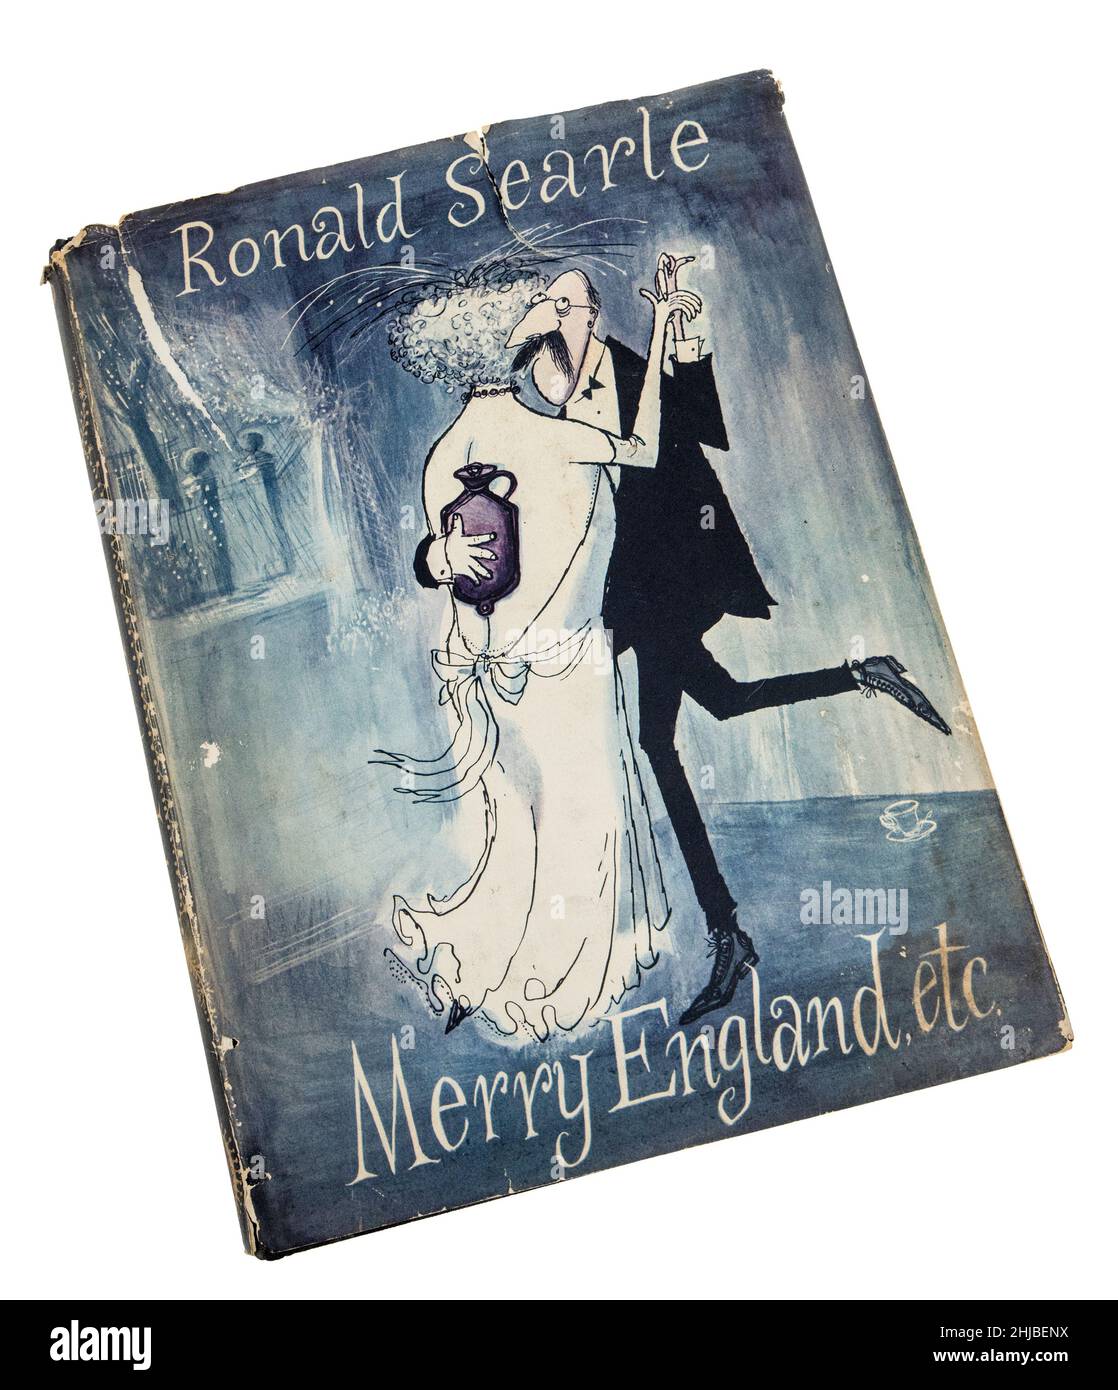 Livre classique Merry England de Ronald Searle première édition, publié en 1956 Banque D'Images